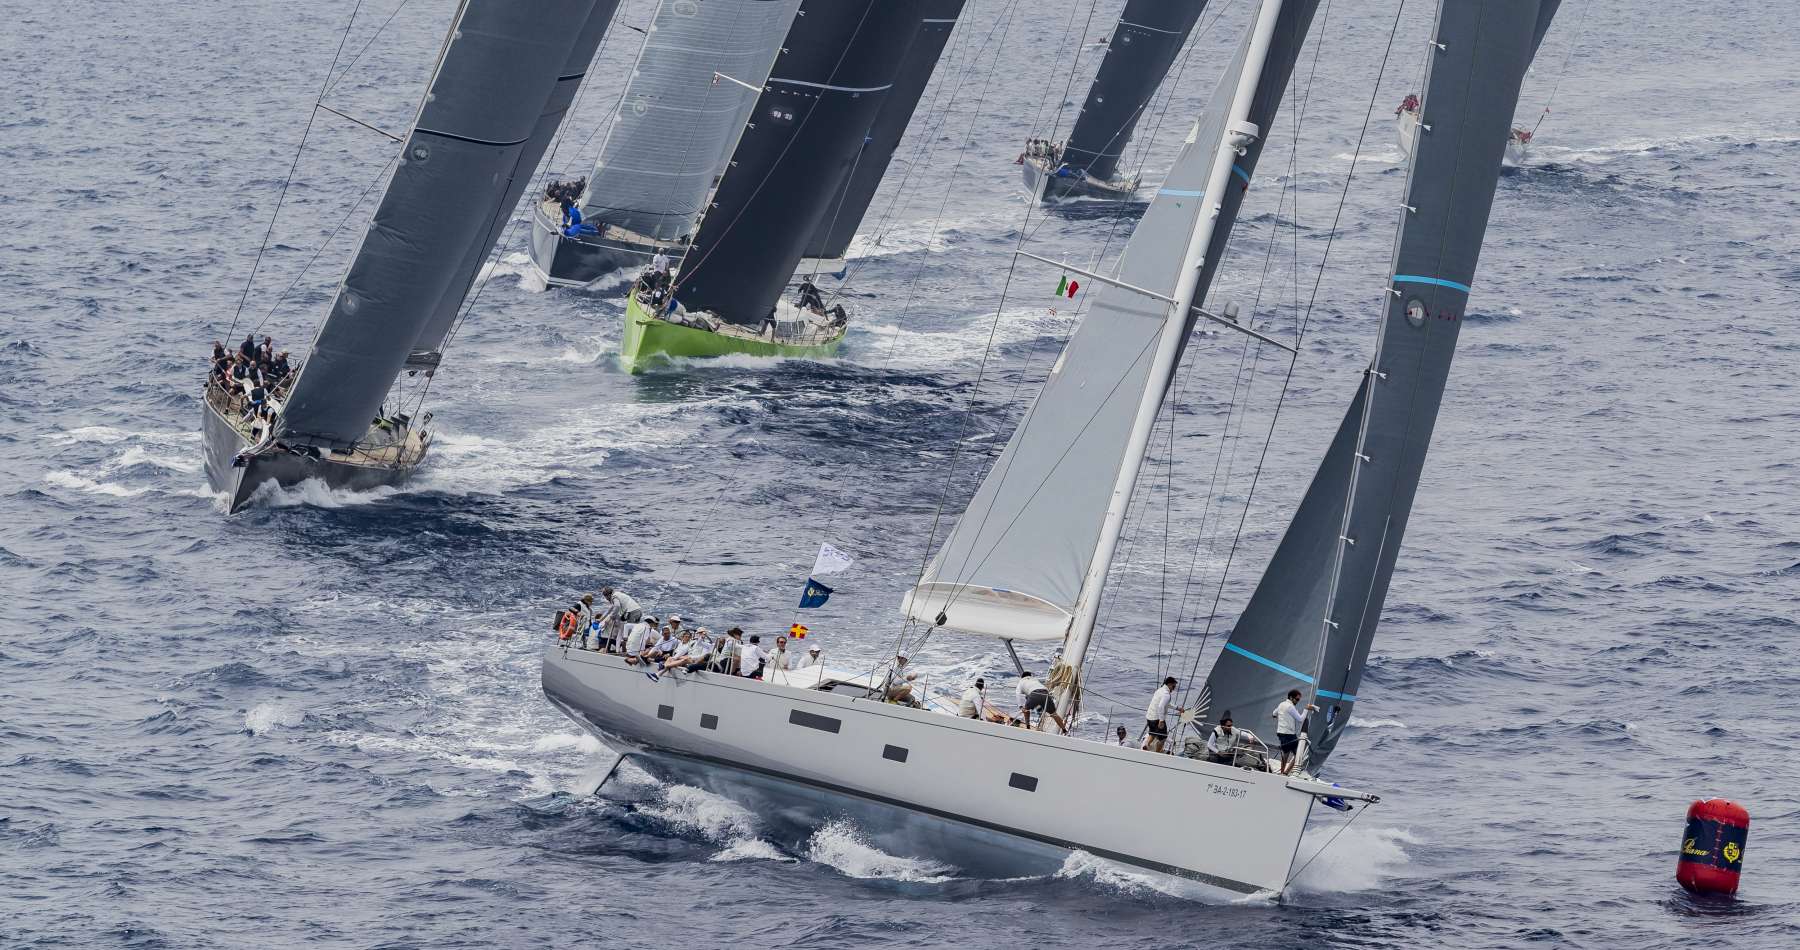 Loro Piana Superyacht Regatta, si delinea la classifica  - Comunicati Stampa - Yacht Club Costa Smeralda